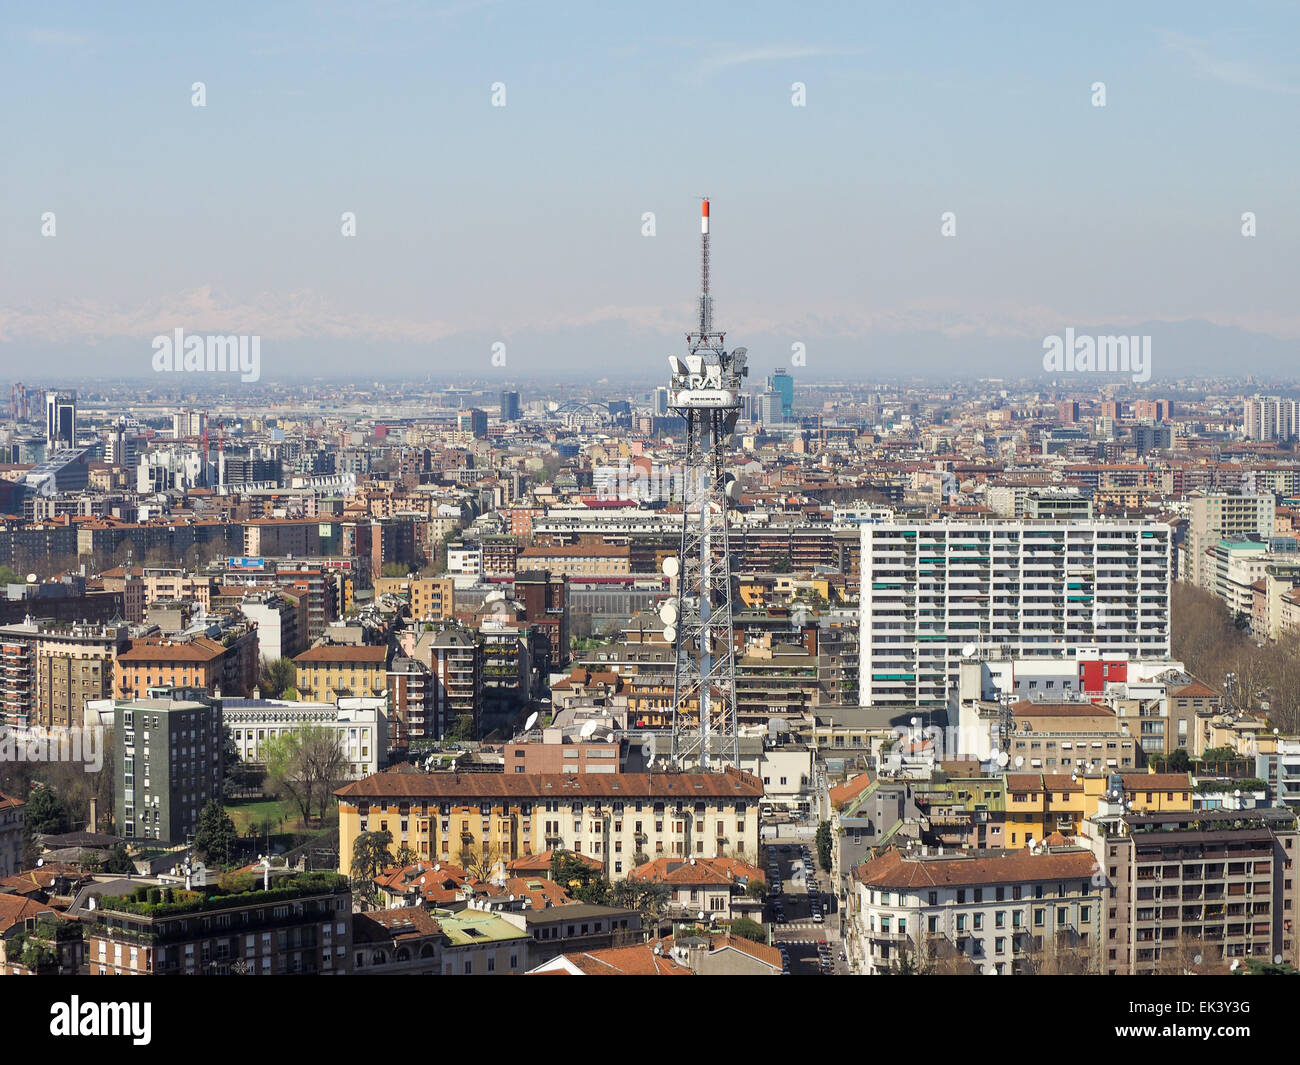 MILAN, ITALIE - 28 mars 2015 : La tour de radiodiffusion de télévision publique italienne RAI vu sur les toits de la ville Banque D'Images